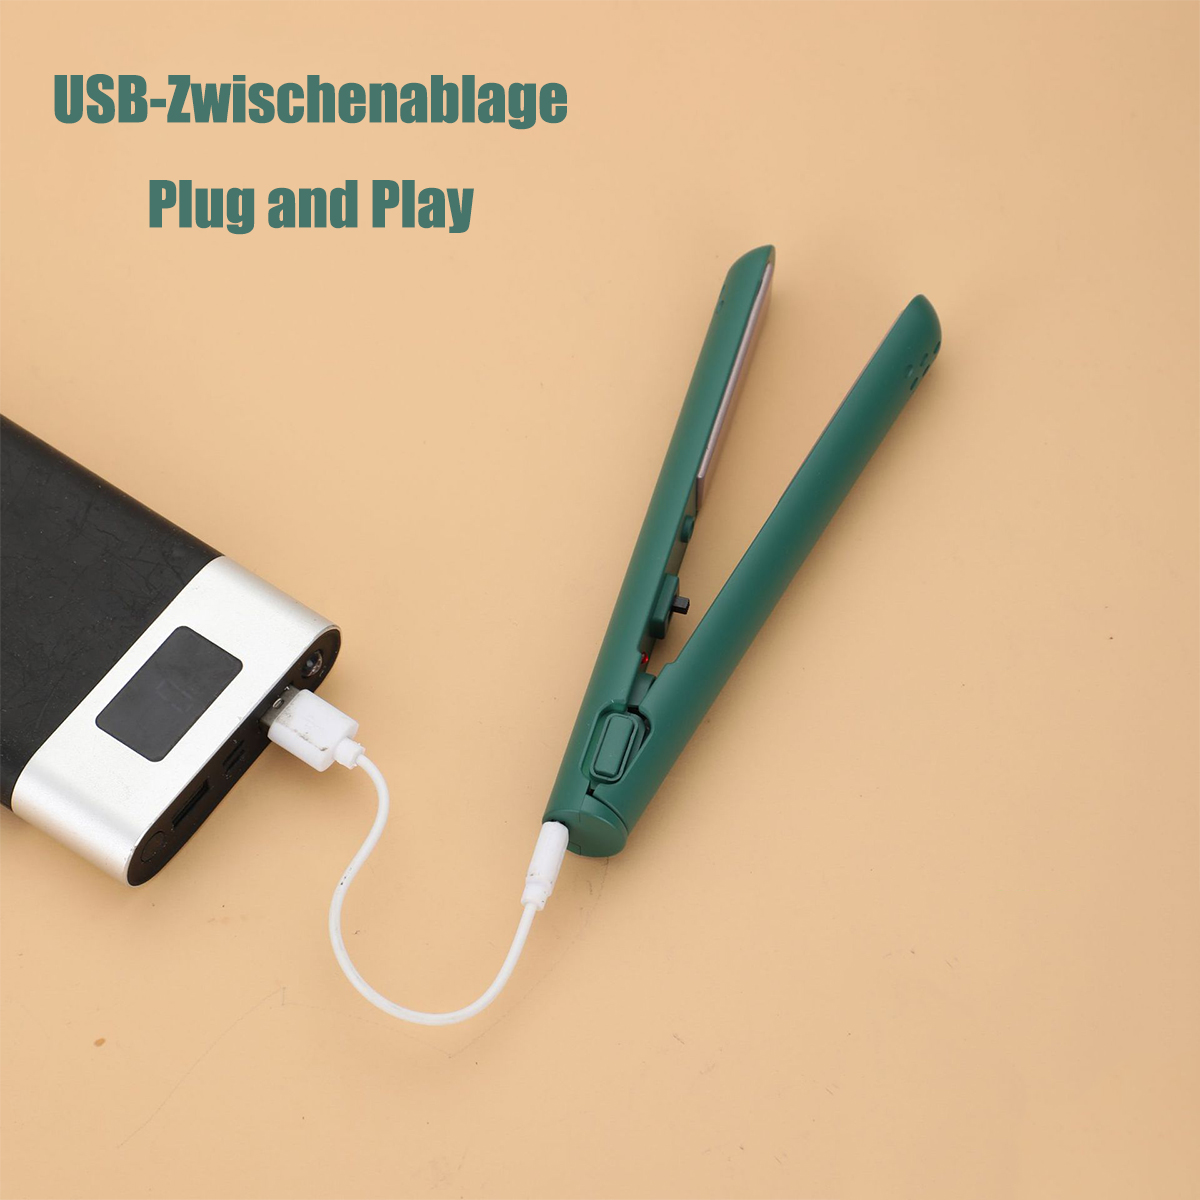 SHAOKE mit Kleines Power-Curling-Eisen Temperaturstufen: USB-Schnittstelle 1 aus Lockenstab, Turmalin-Keramik